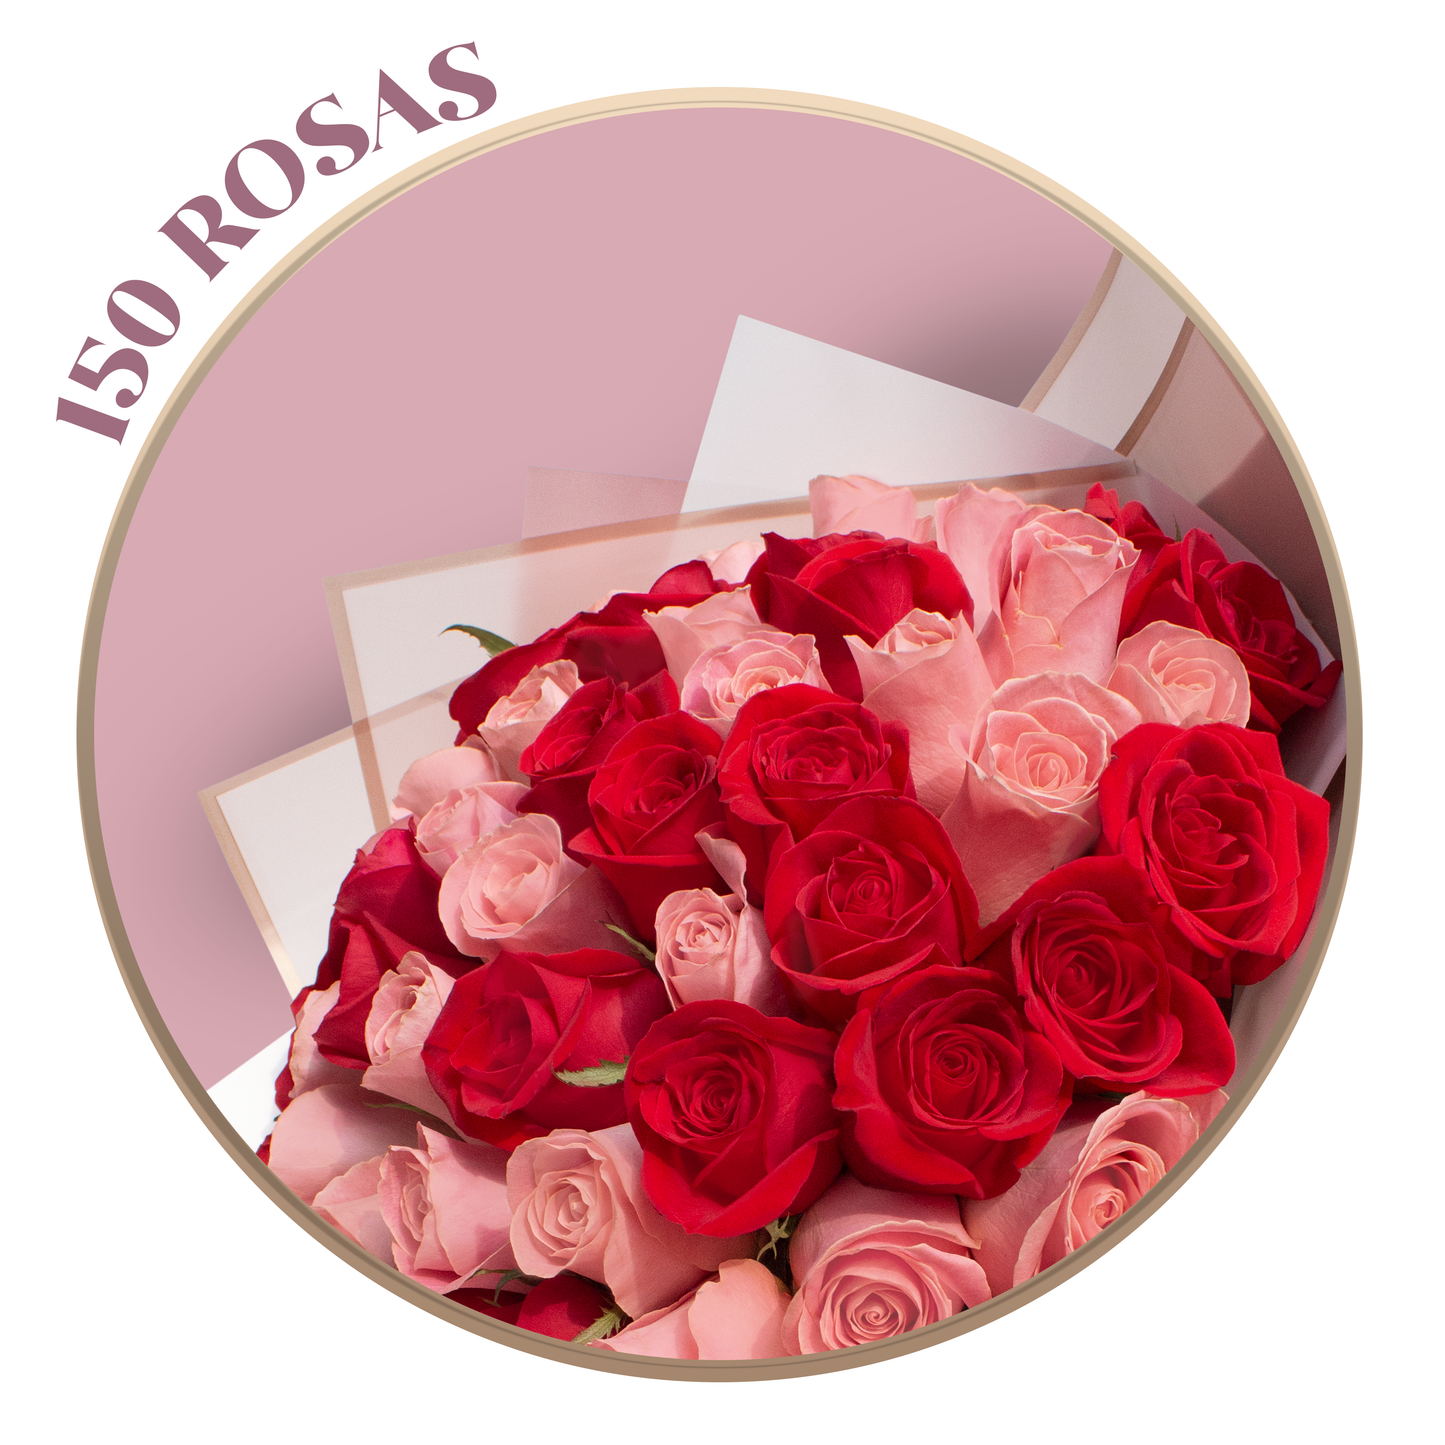 Ramo de Rosas Rosa (Hermosa) y Rojas, presentación de 50, 100 o 150 rosas